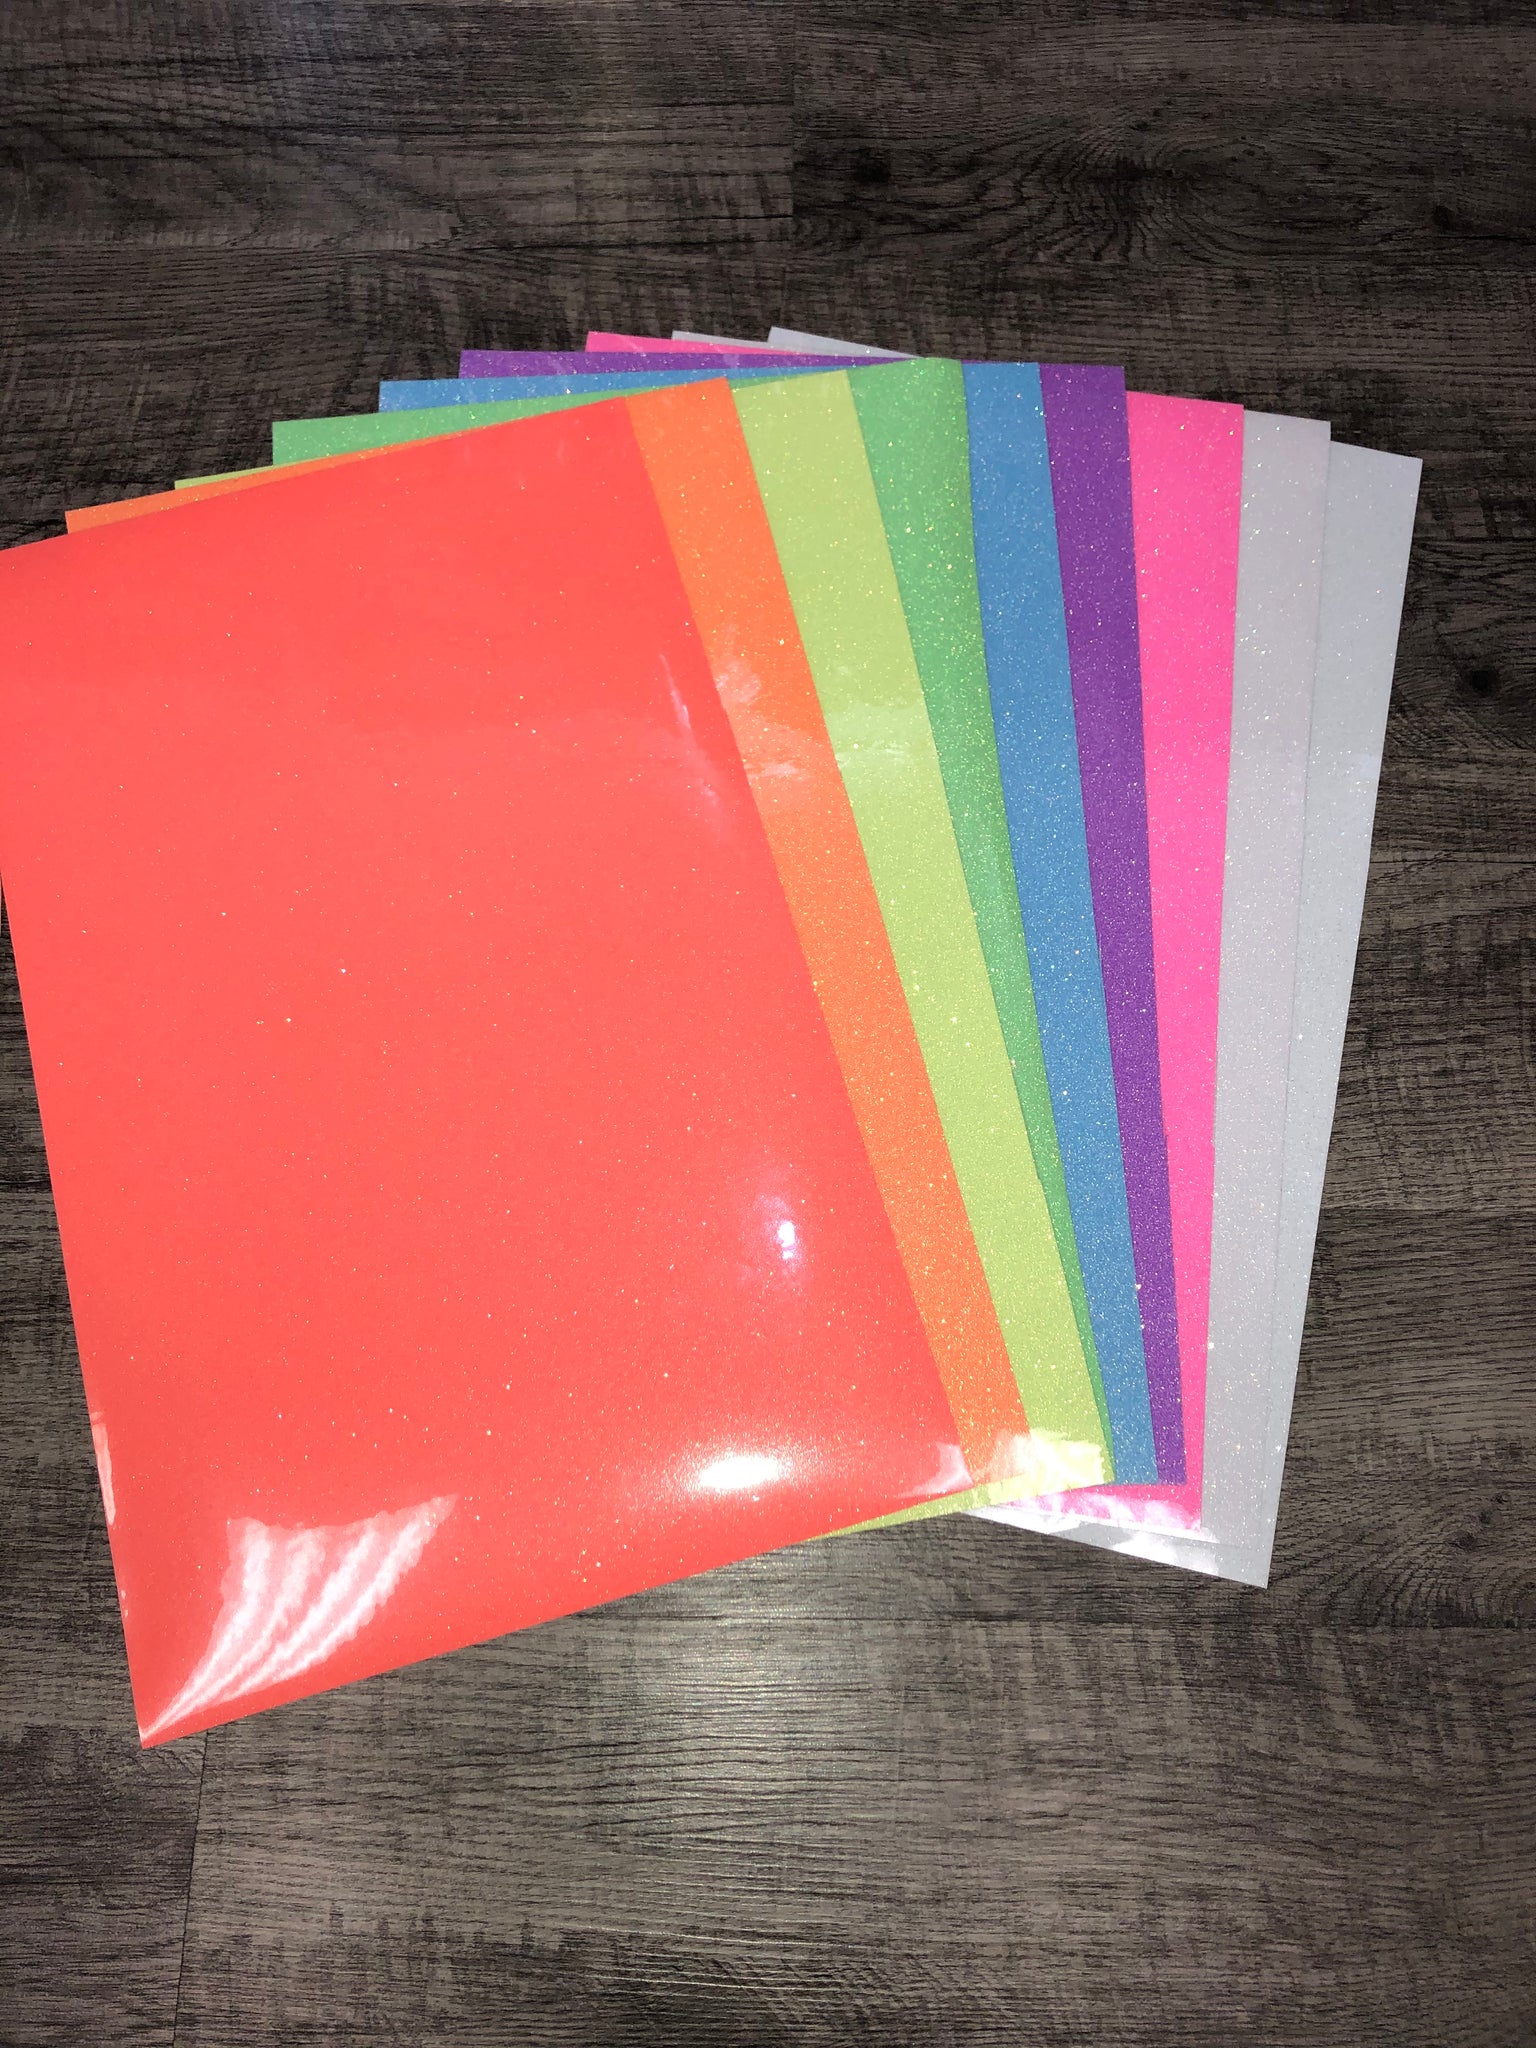 Siser Glitter - Red - 20 x 12 sheet